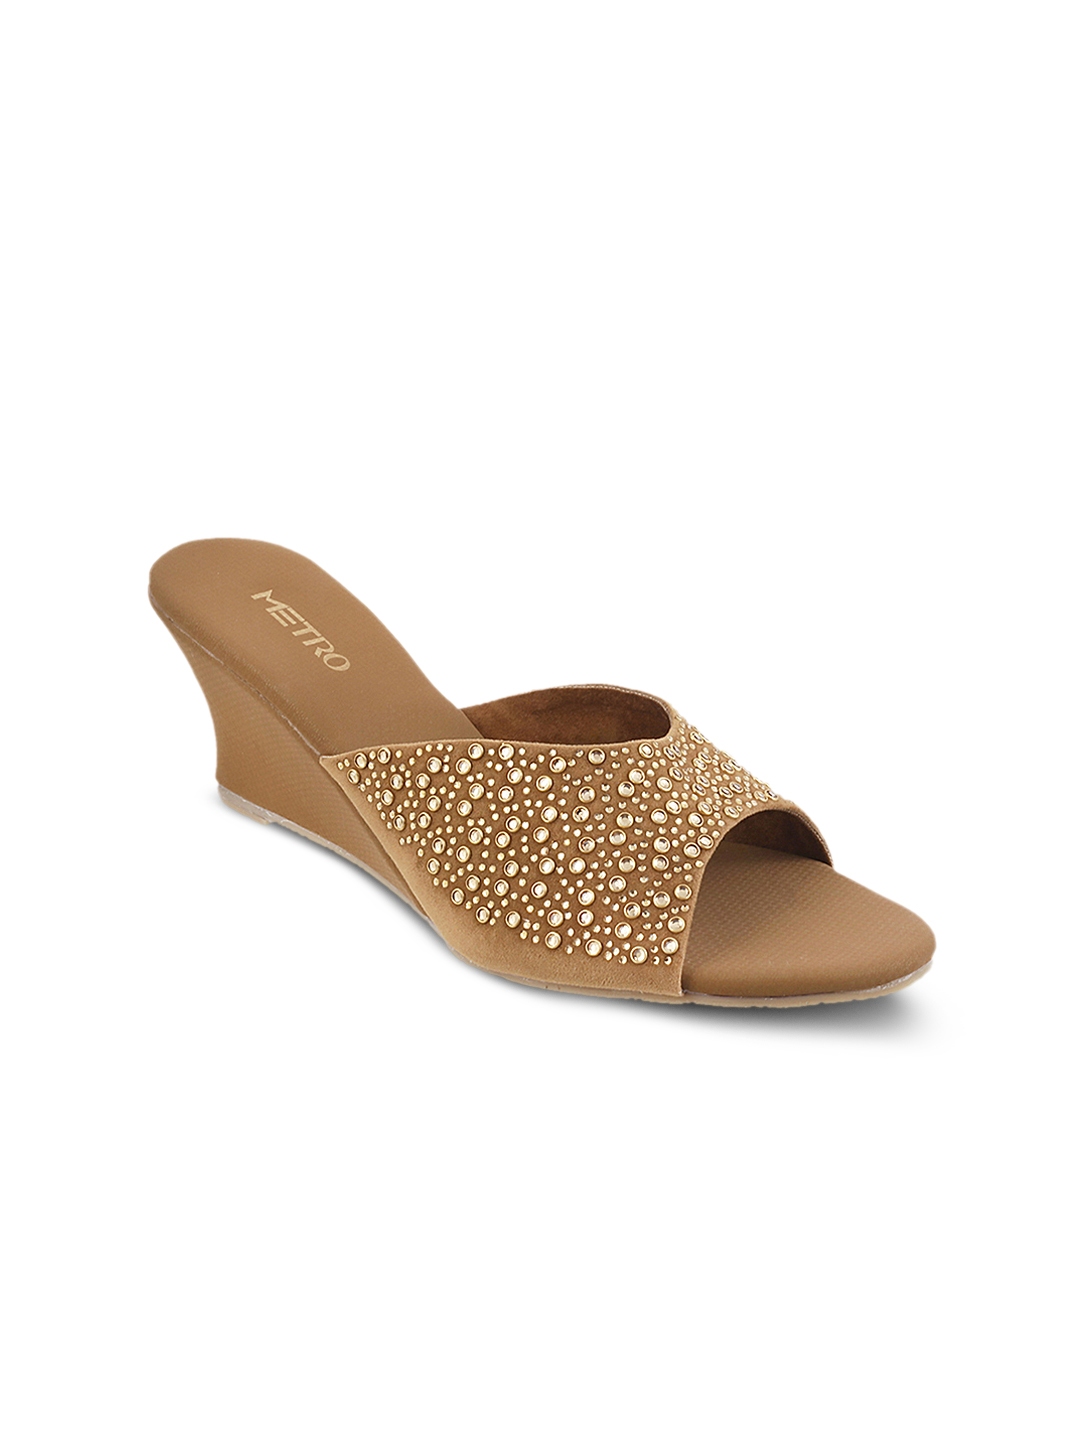 Buy Metro Women Gold Toned Solid Sandals - Heels for Women 7092470 | Myntra